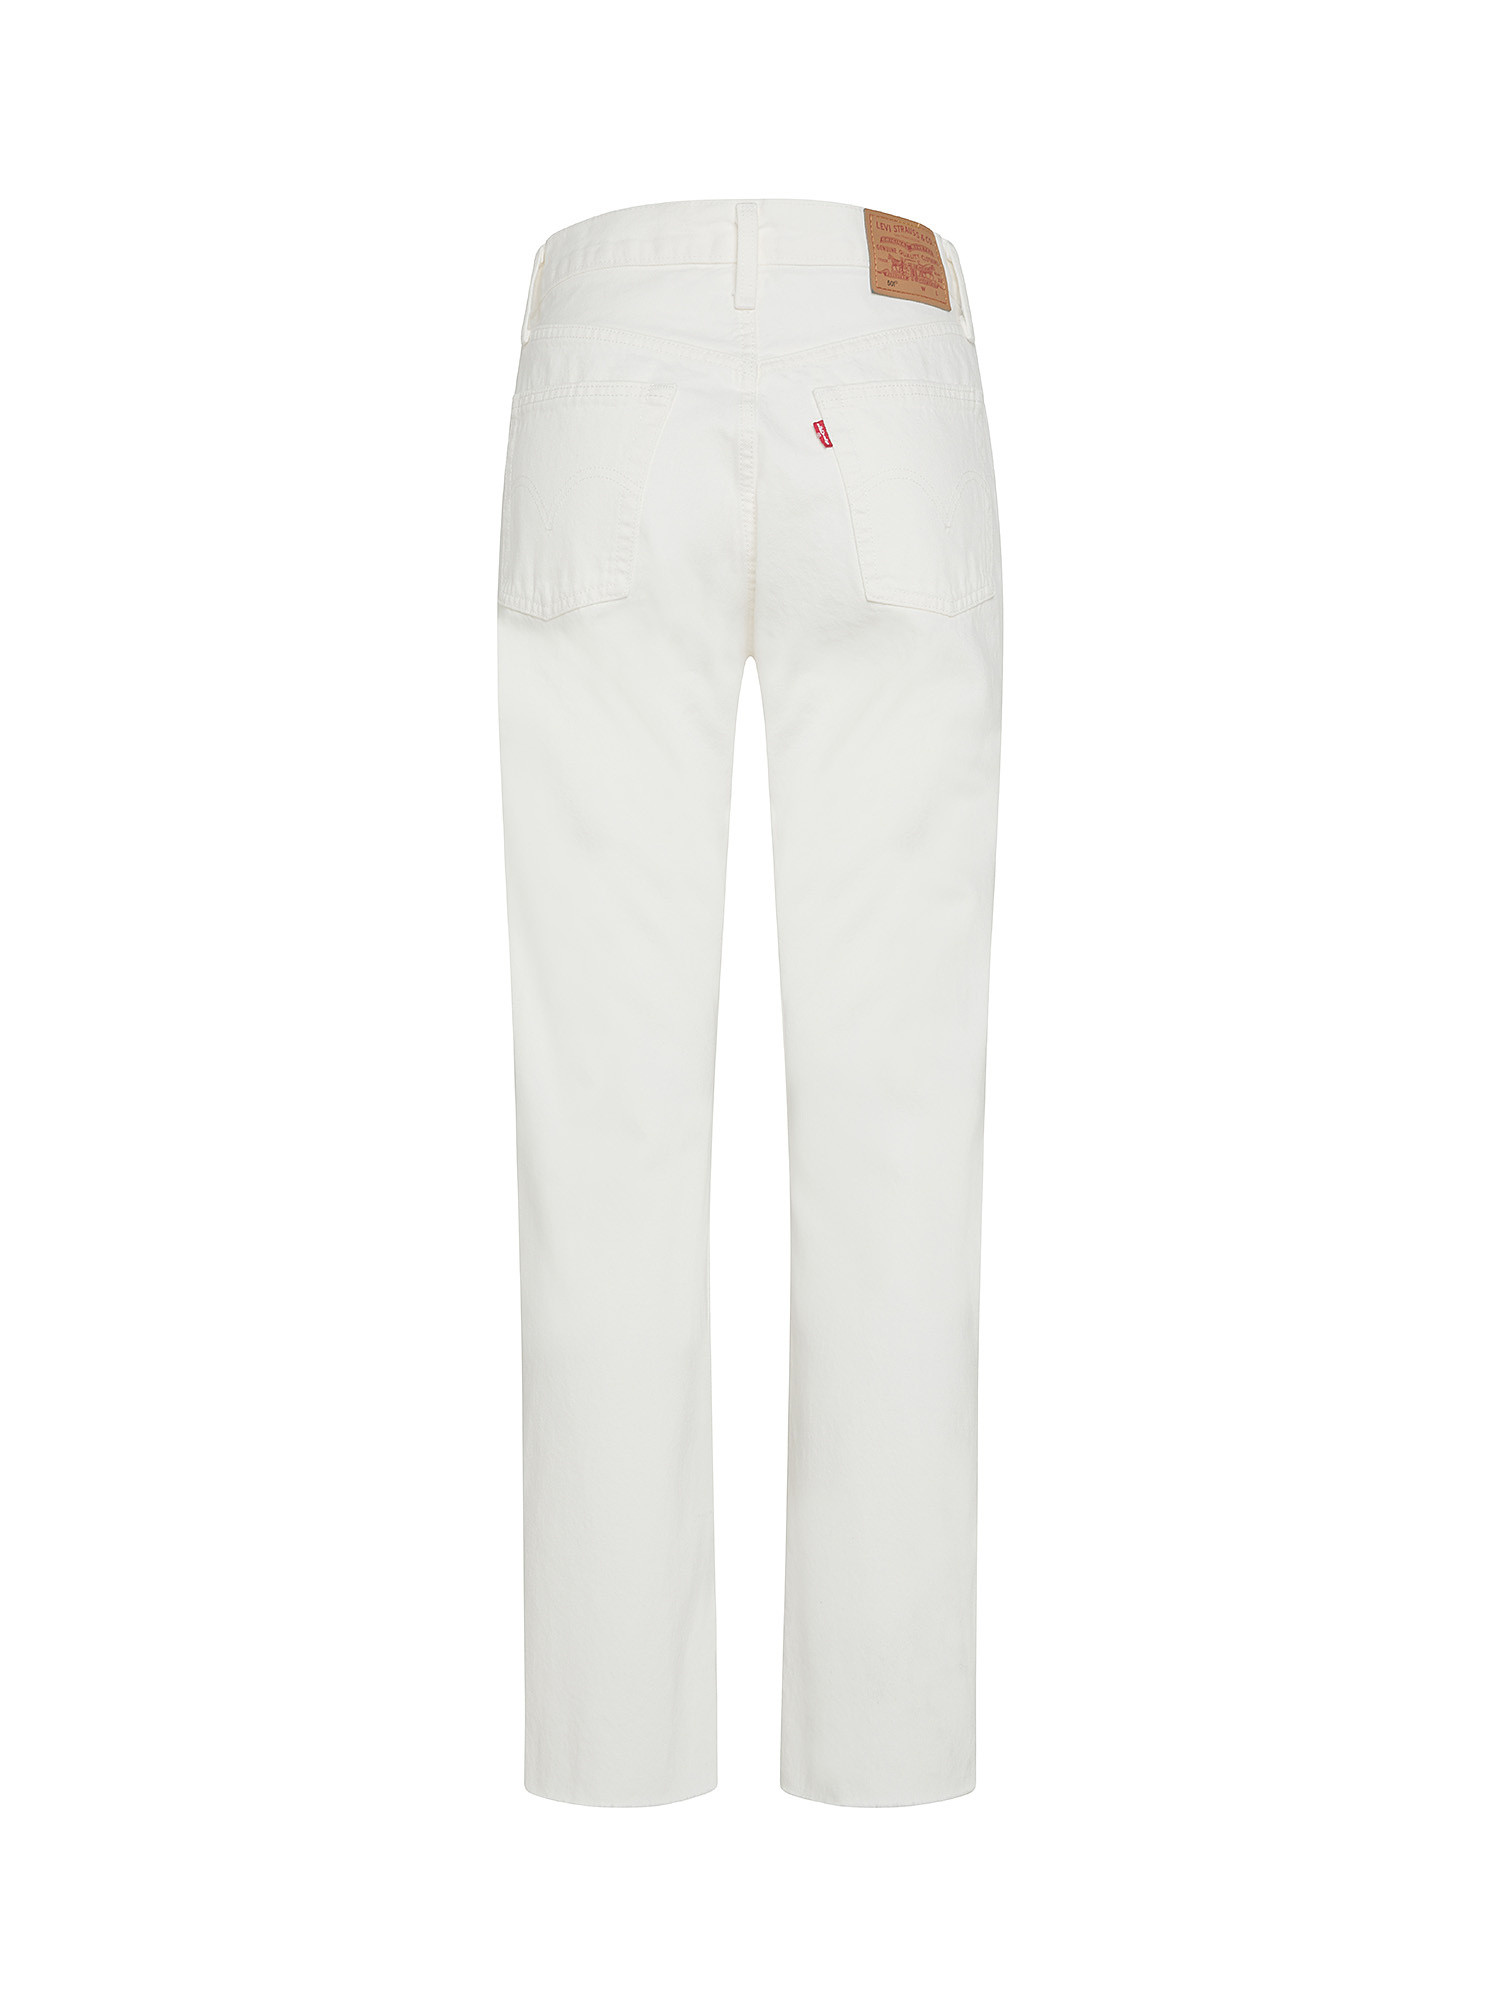 Levi's - jeans 501® original, Bianco, large image number 1